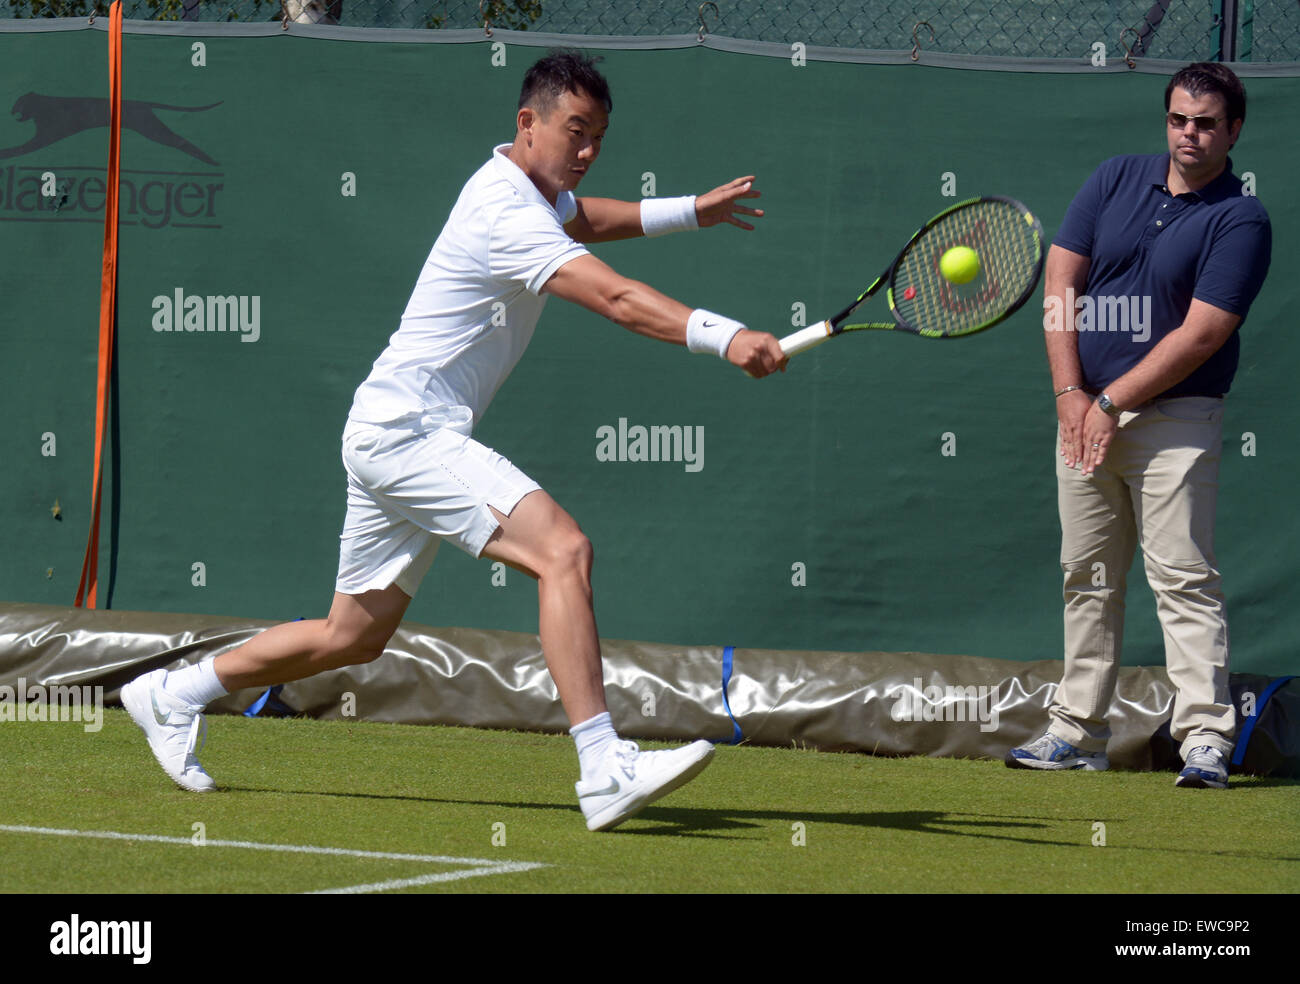 Il torneo di Wimbledon, Londra, Regno Unito. Il 22 giugno, 2015. Banca d'Inghilterra Sportivi Roehampton Londra Inghilterra il 22 giugno 2015. Immagine mostra Jimmy Wang di Taipei cinese che ha battuto Pedro Cachin di Argentina 4-6 6-3 7-5. Wang ha raggiunto il terzo round del main draw a Wimbledon lo scorso anno una carriera per il 30-anno-vecchio. Le qualificazioni per i campionati ha iniziato oggi - una settimana prima dell'evento principale. non vi è un unico "vincitore" di qualifica, invece i giocatori che vincere tutte e tre le manche - 16 nel singolo maschile e 12 nell'Ladies' Singles - di progredire, lungo con quattro coppie di e Foto Stock